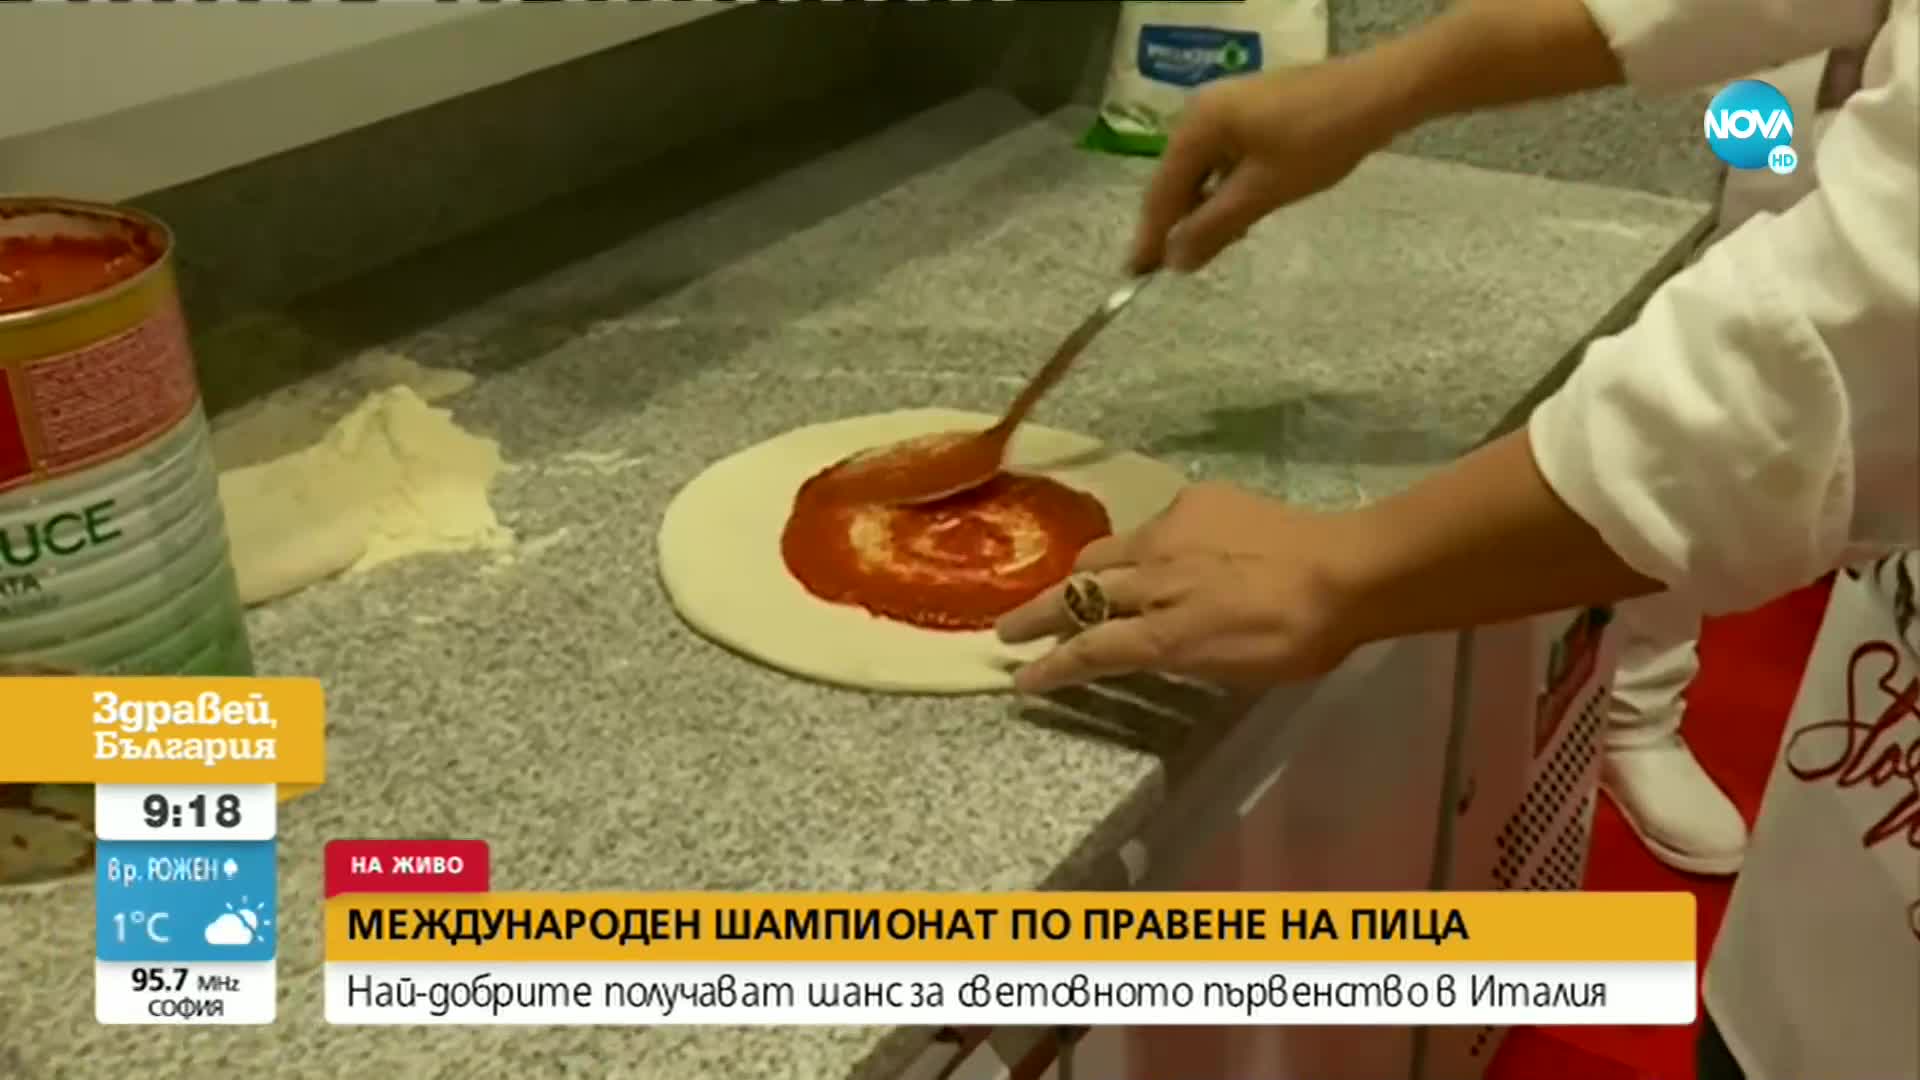 У нас започна международен шампионат по правене на пица